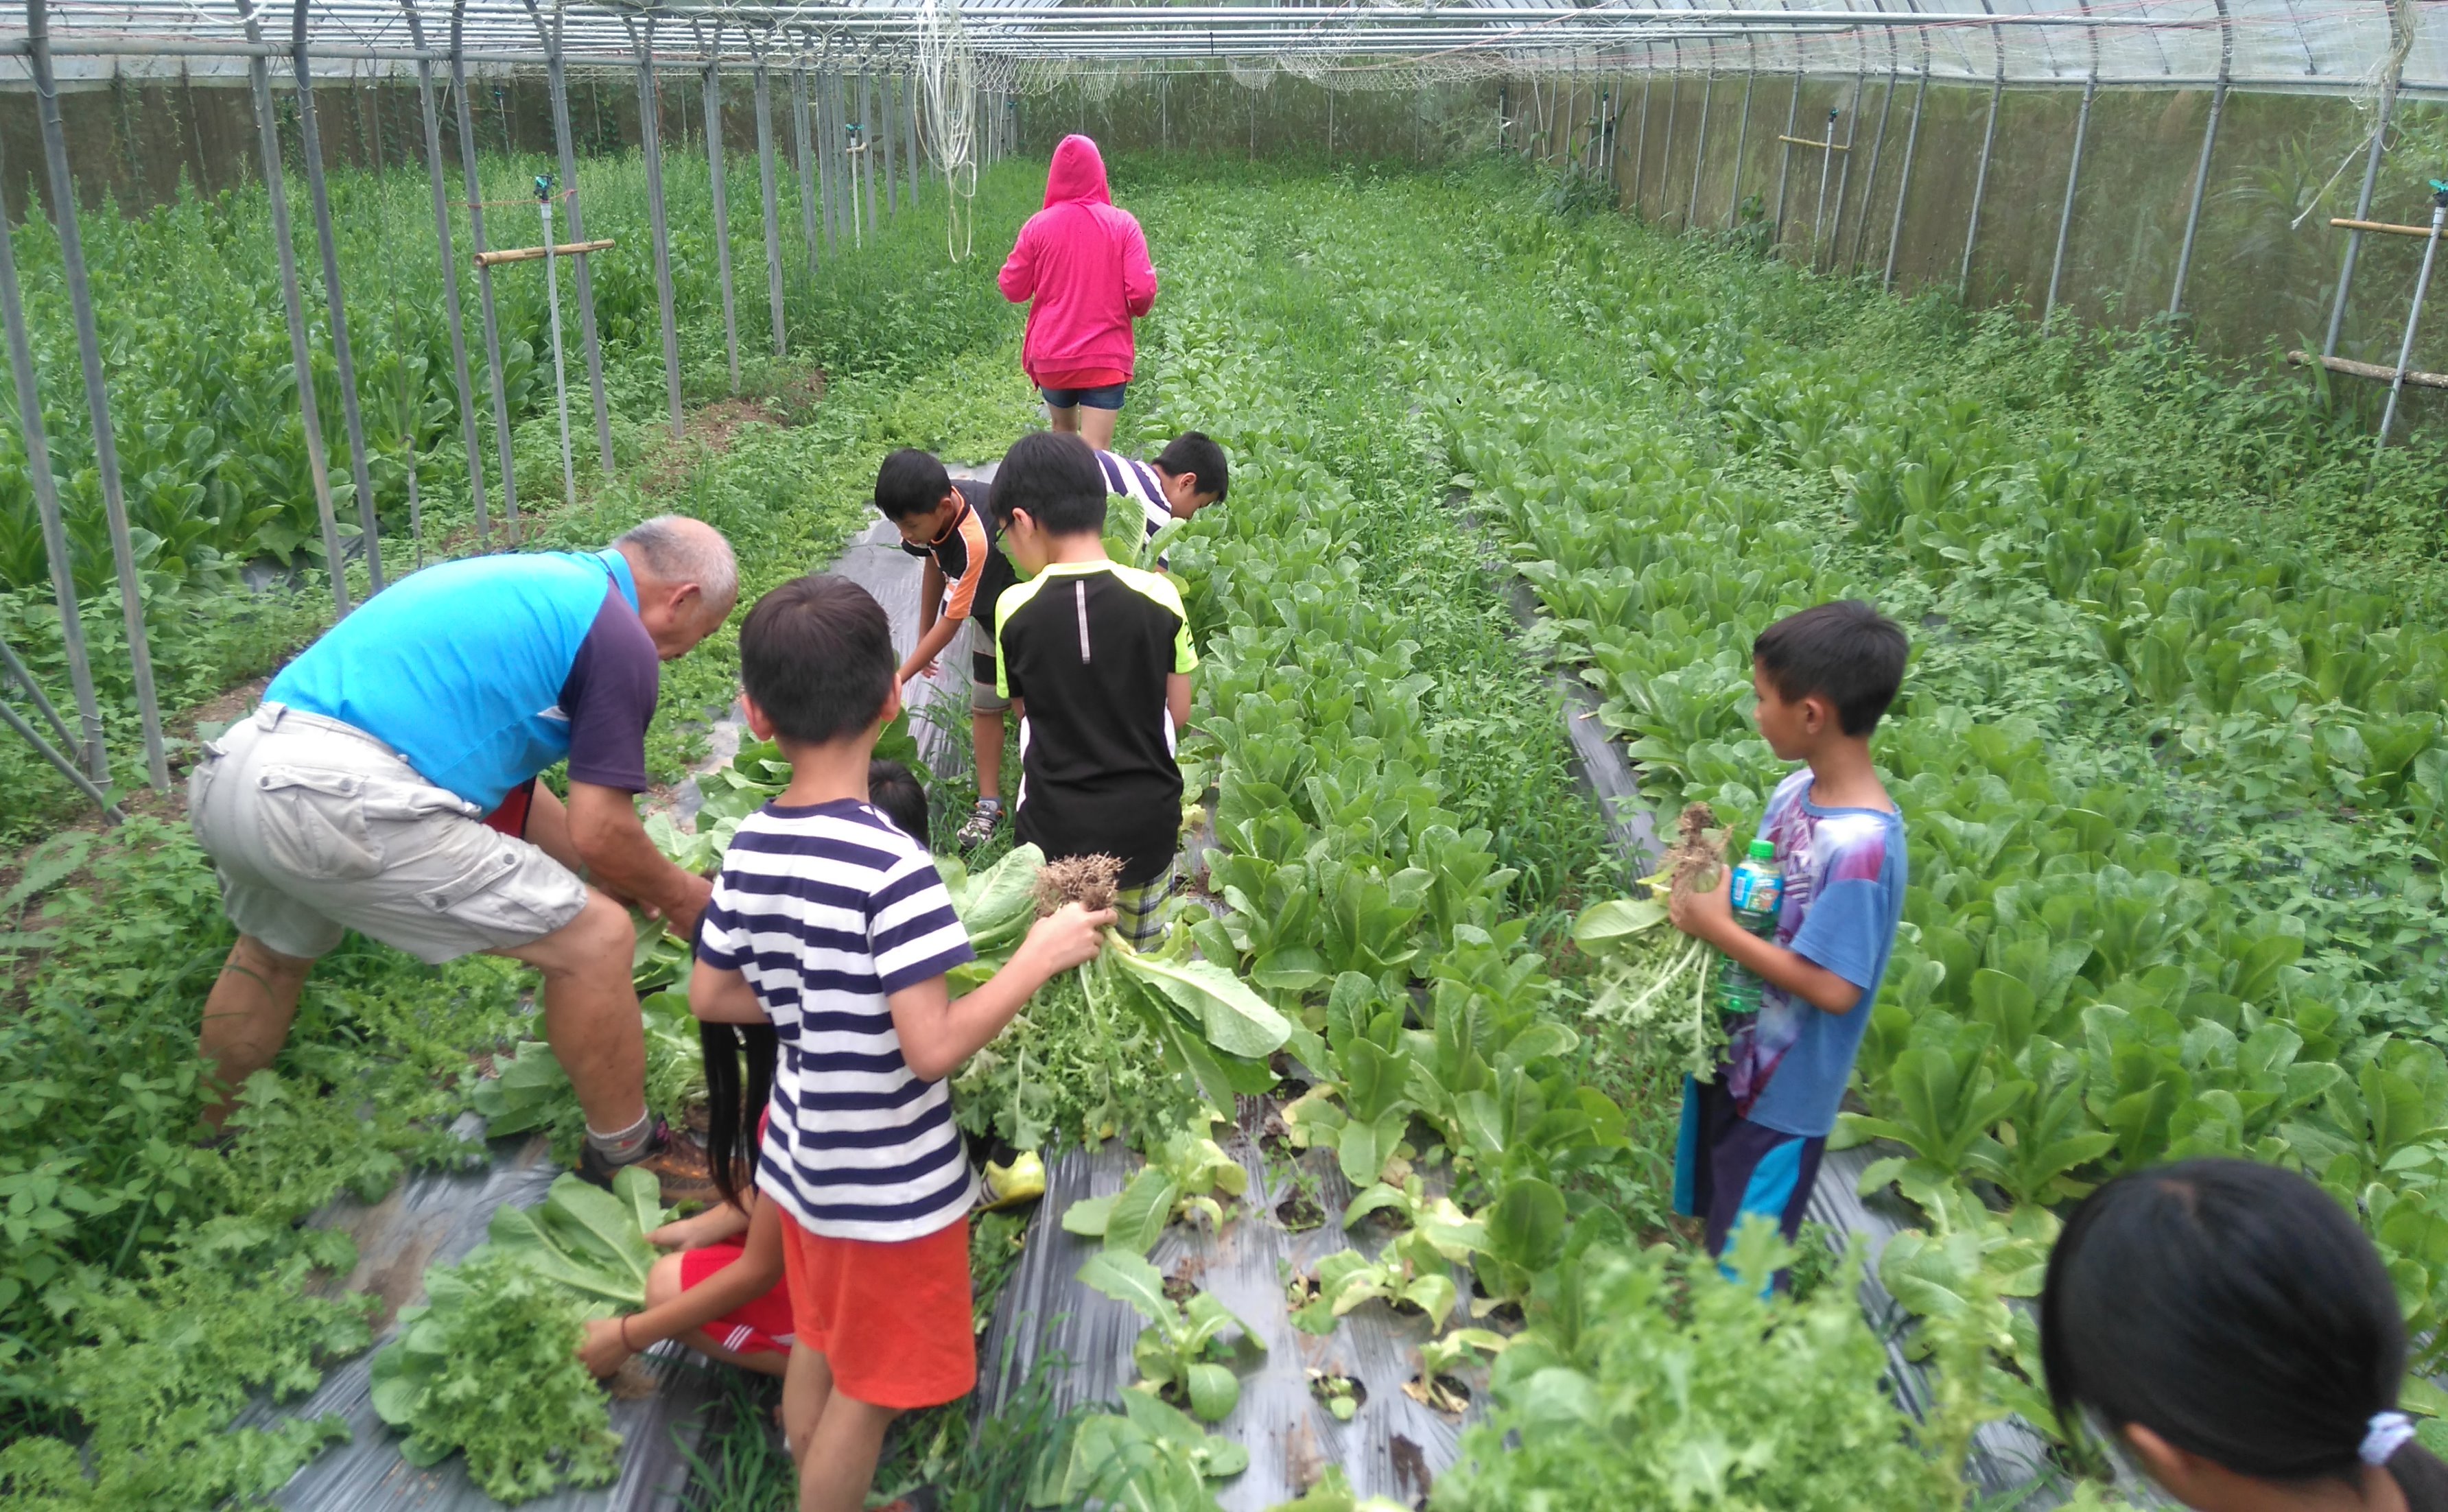 教導學生如何採收有機蔬菜